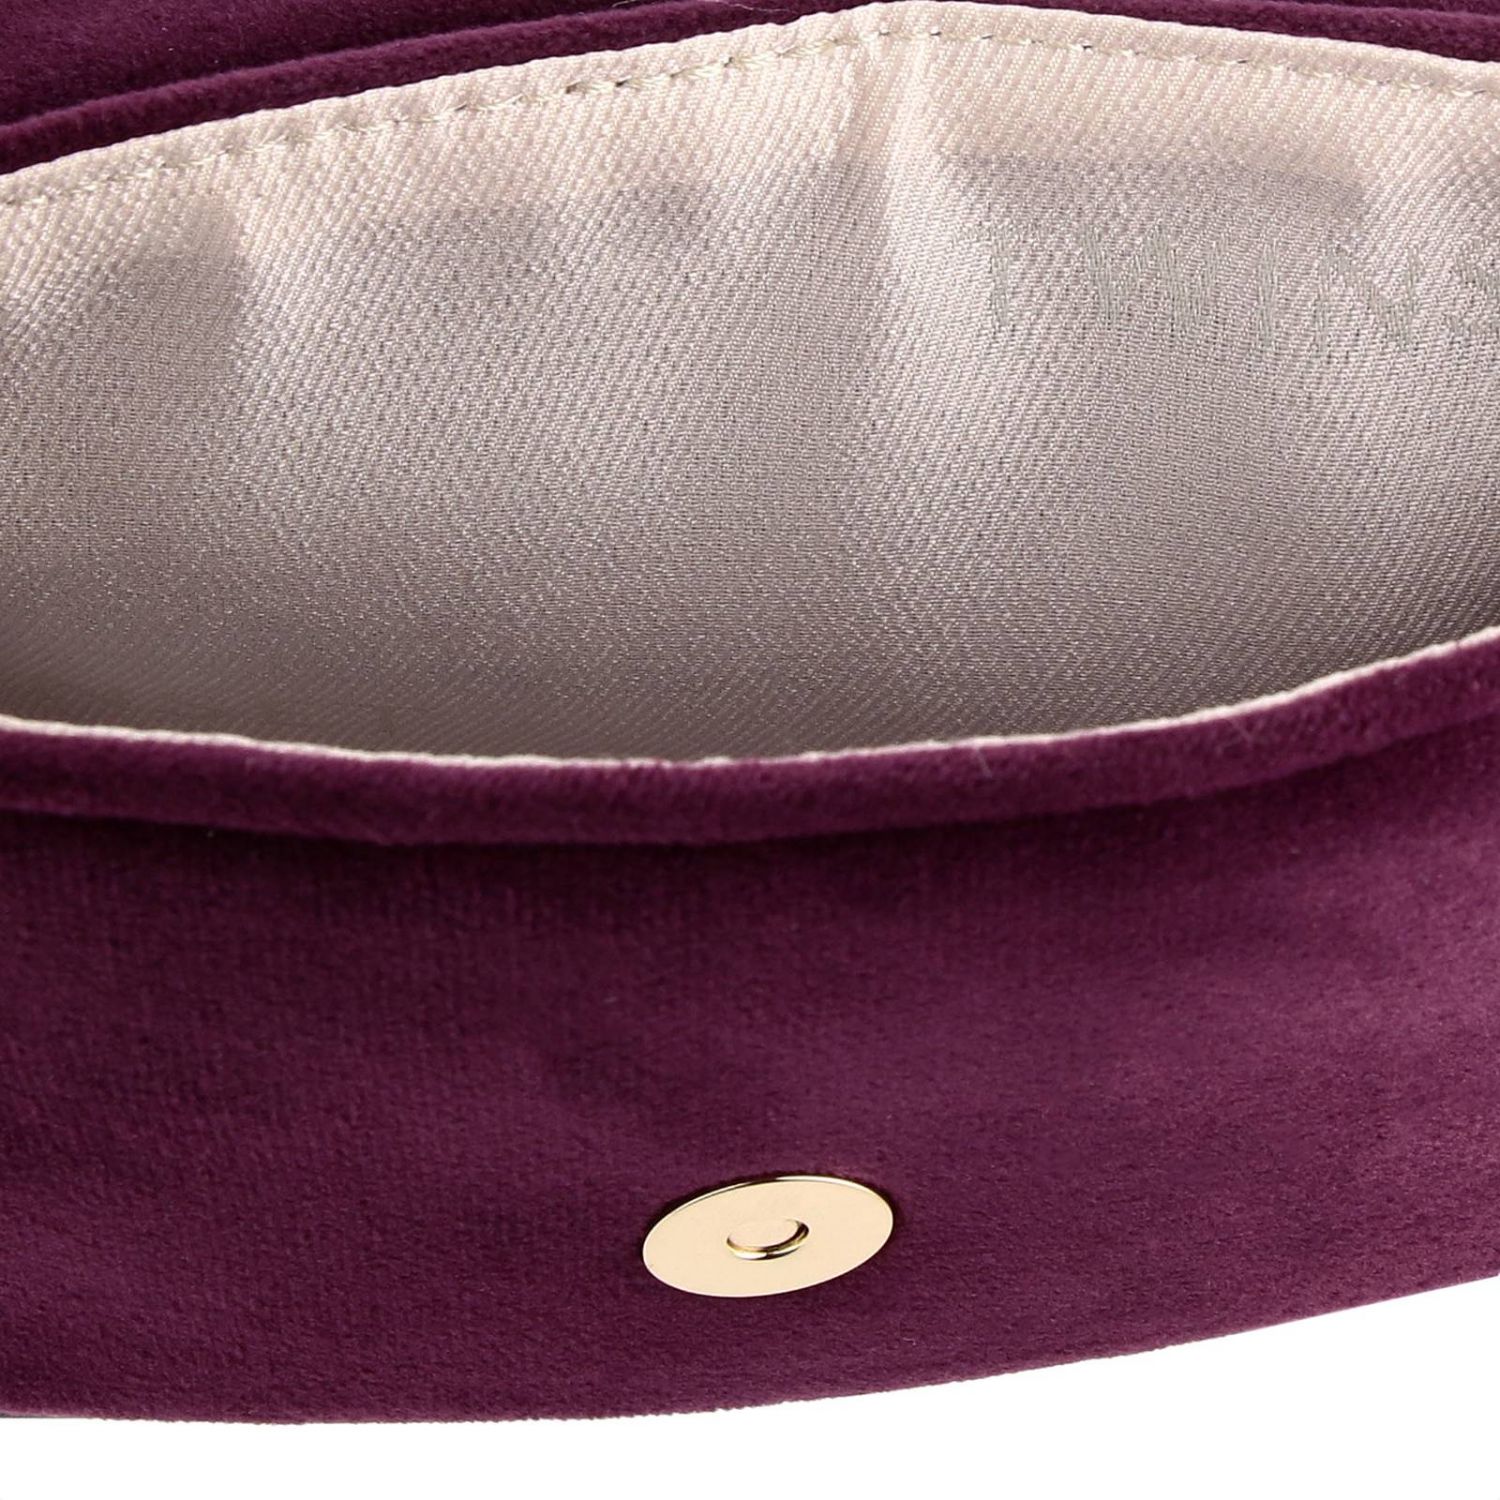 Twinset Outlet: Shoulder bag women Twin Set - Burgundy | Mini Bag ...